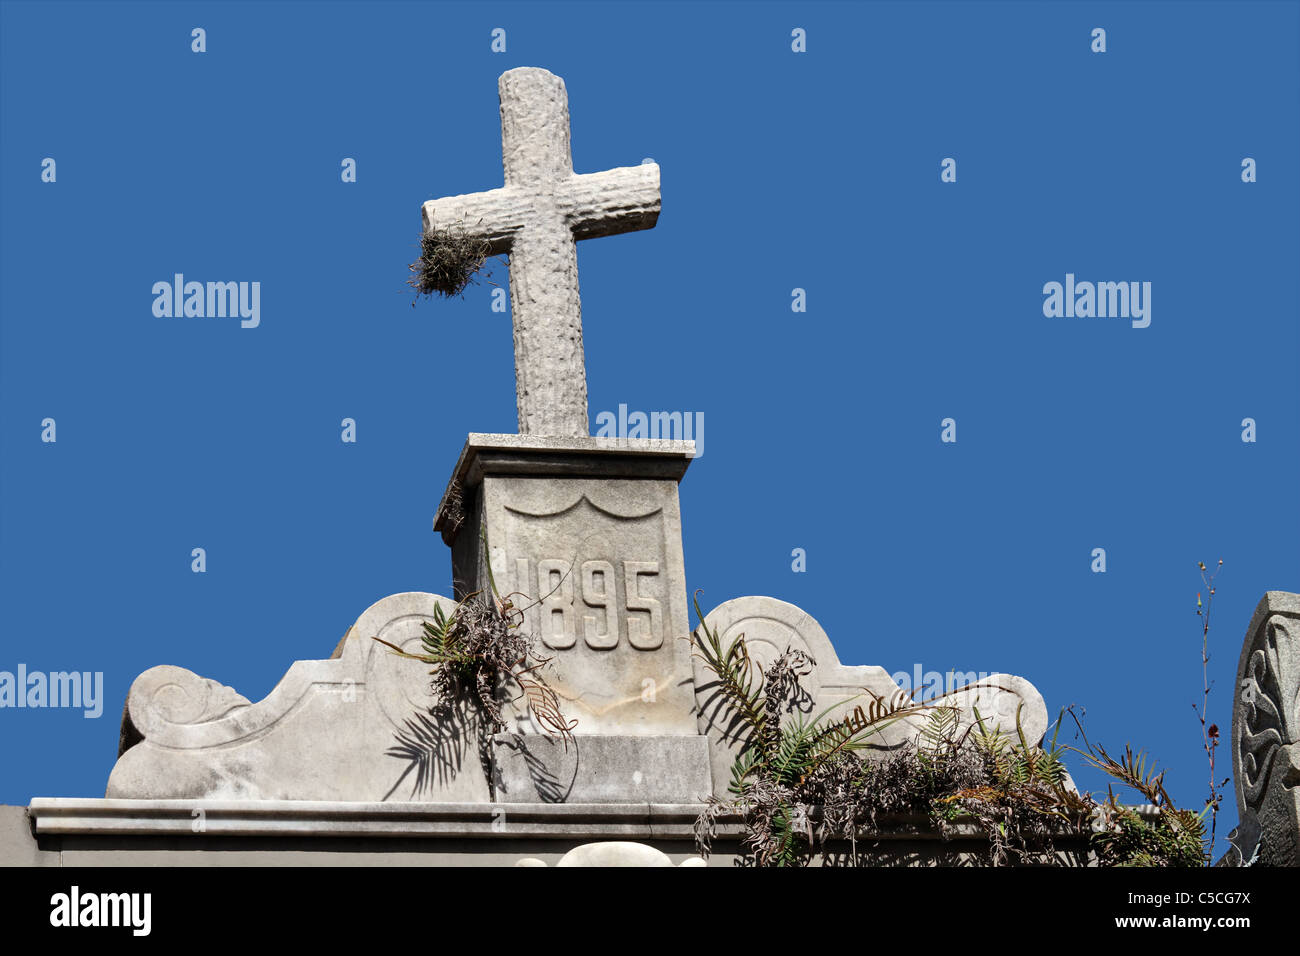 Tumba antigua cruz de piedra contra un cielo azul Foto de stock